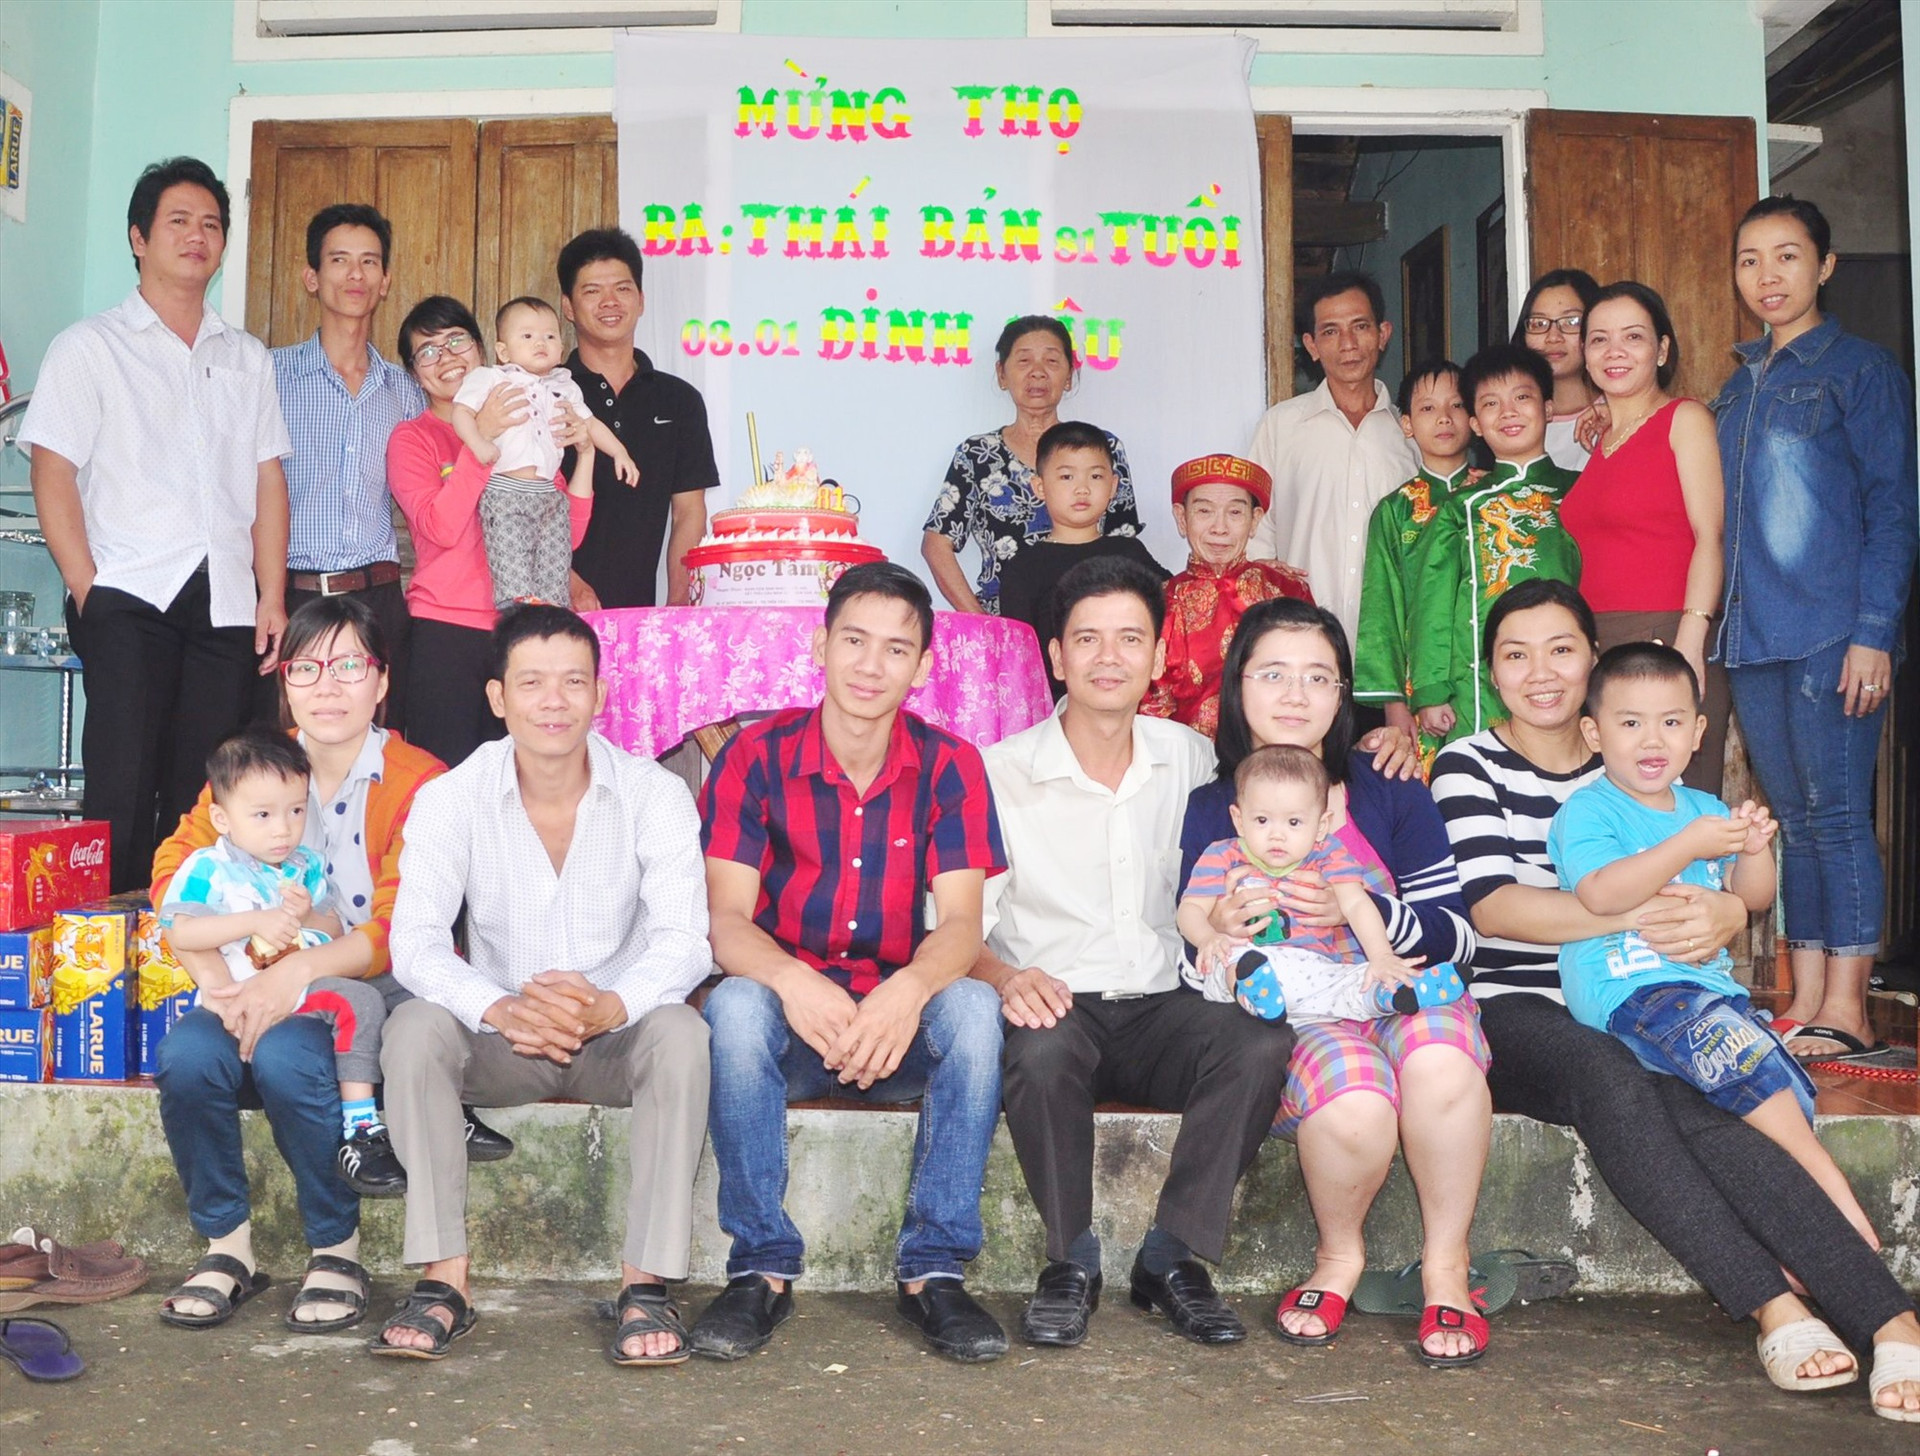 Thái Viết Thuận (người đứng thứ hai từ trái qua) và Thái Viết Nơi (người ngồi thứ tư từ trái qua) chụp chung với đại gia đình năm 2017. Ảnh: LÂM BÌNH THÁ